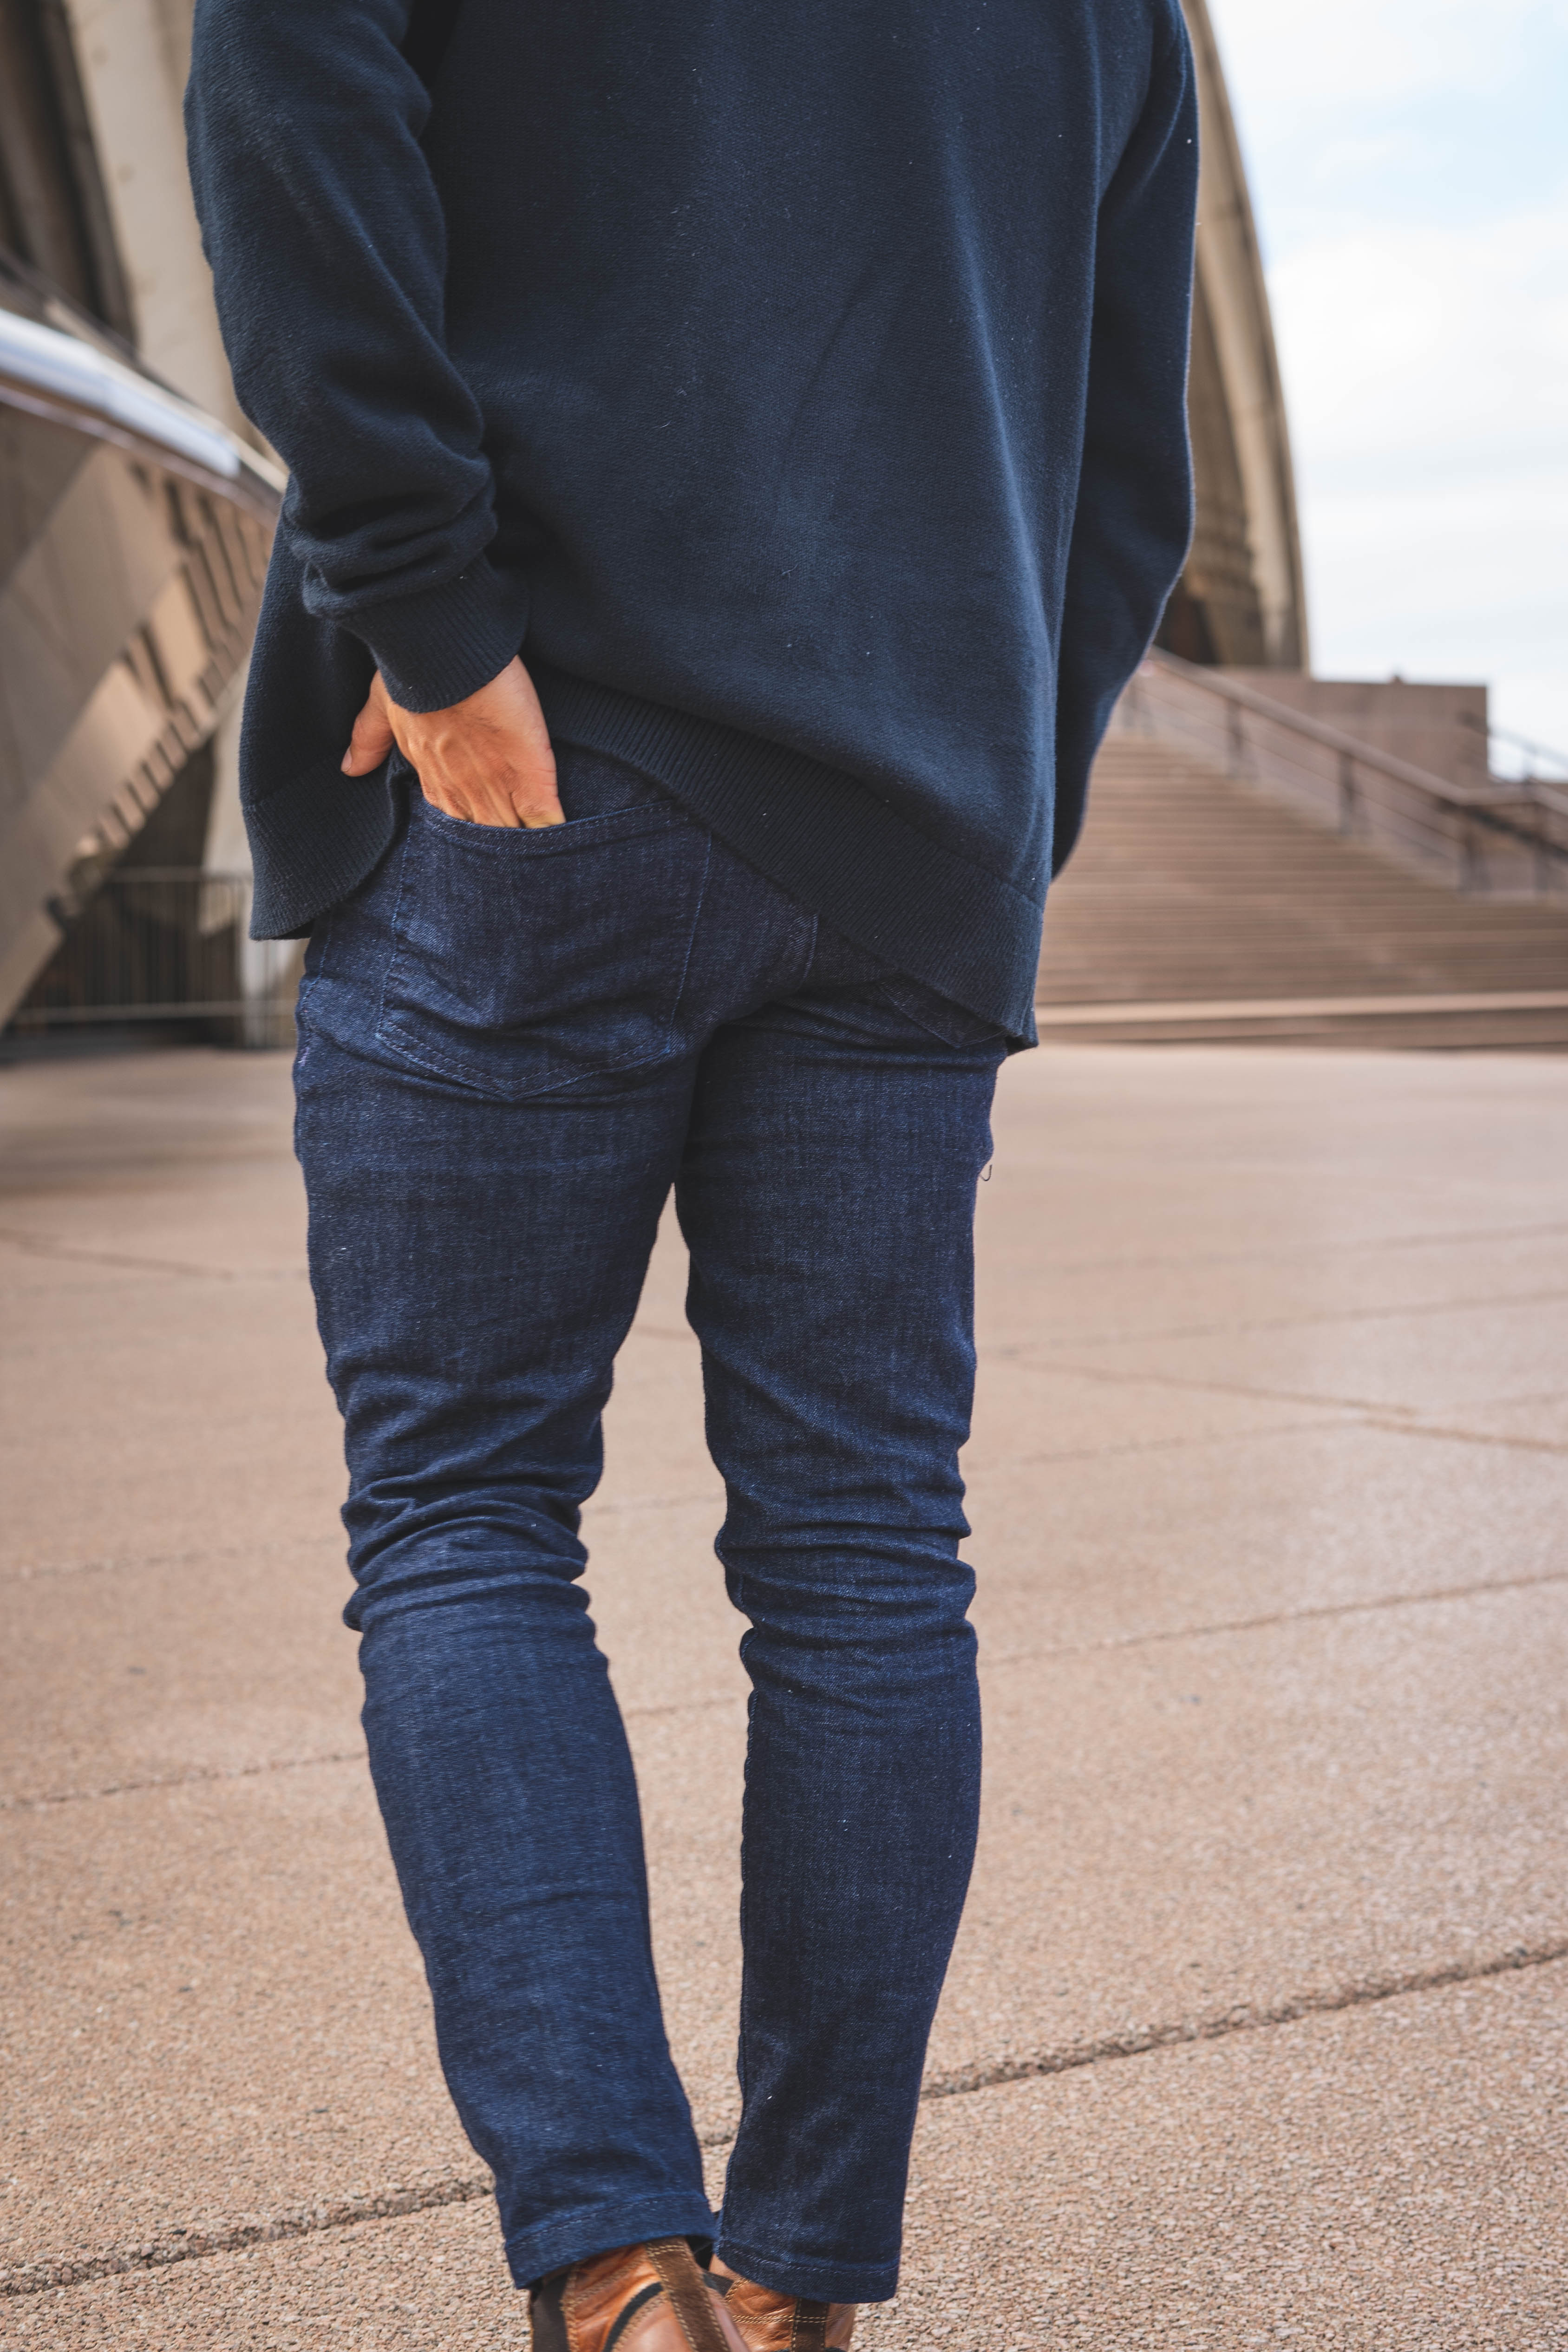 The Bruce Blue | Jeans for Short Men | Under 510 – Under 5'10